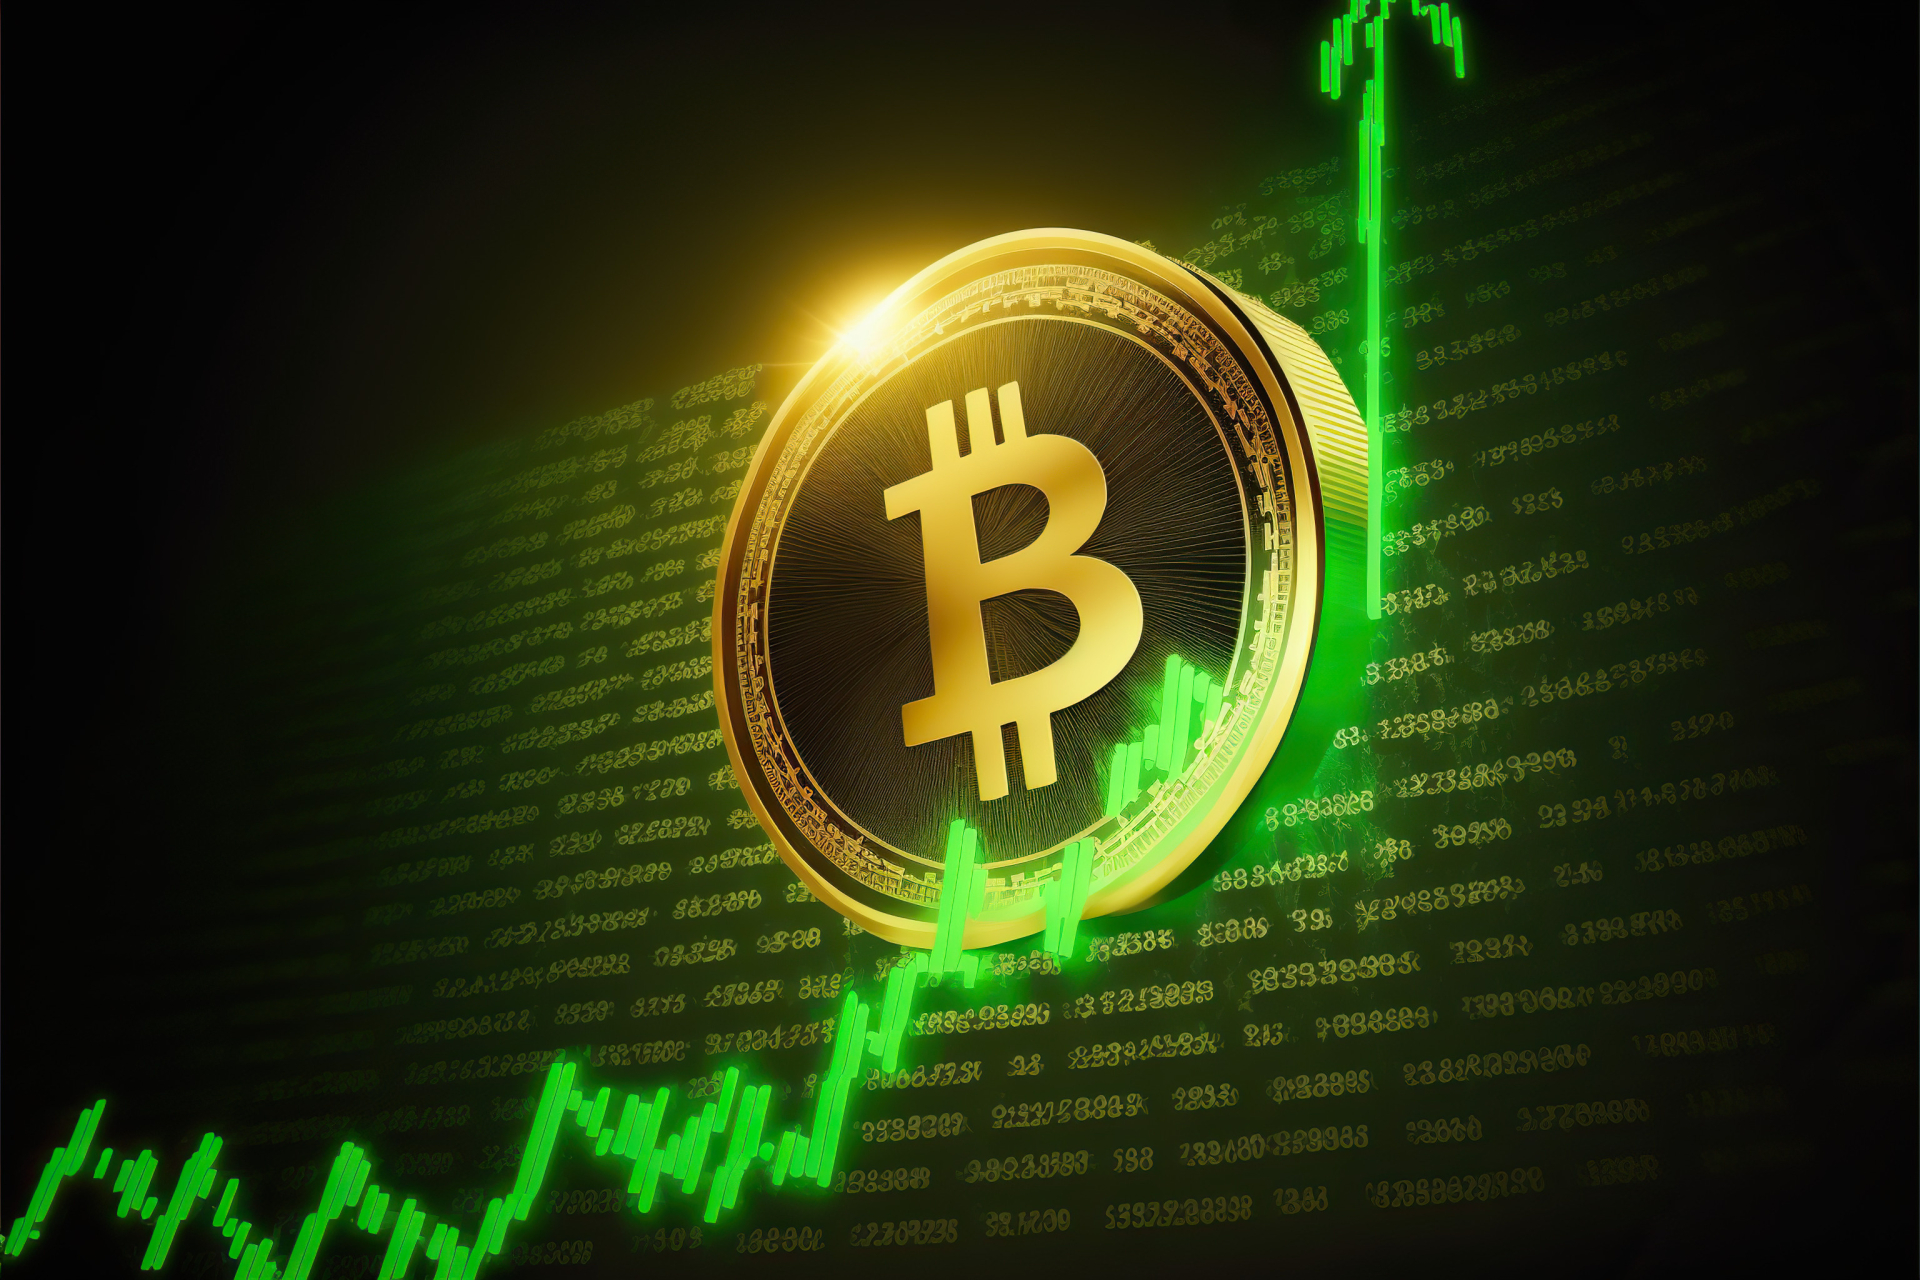 Dan Tapiero predicts $10 trillion market cap for Bitcoin
